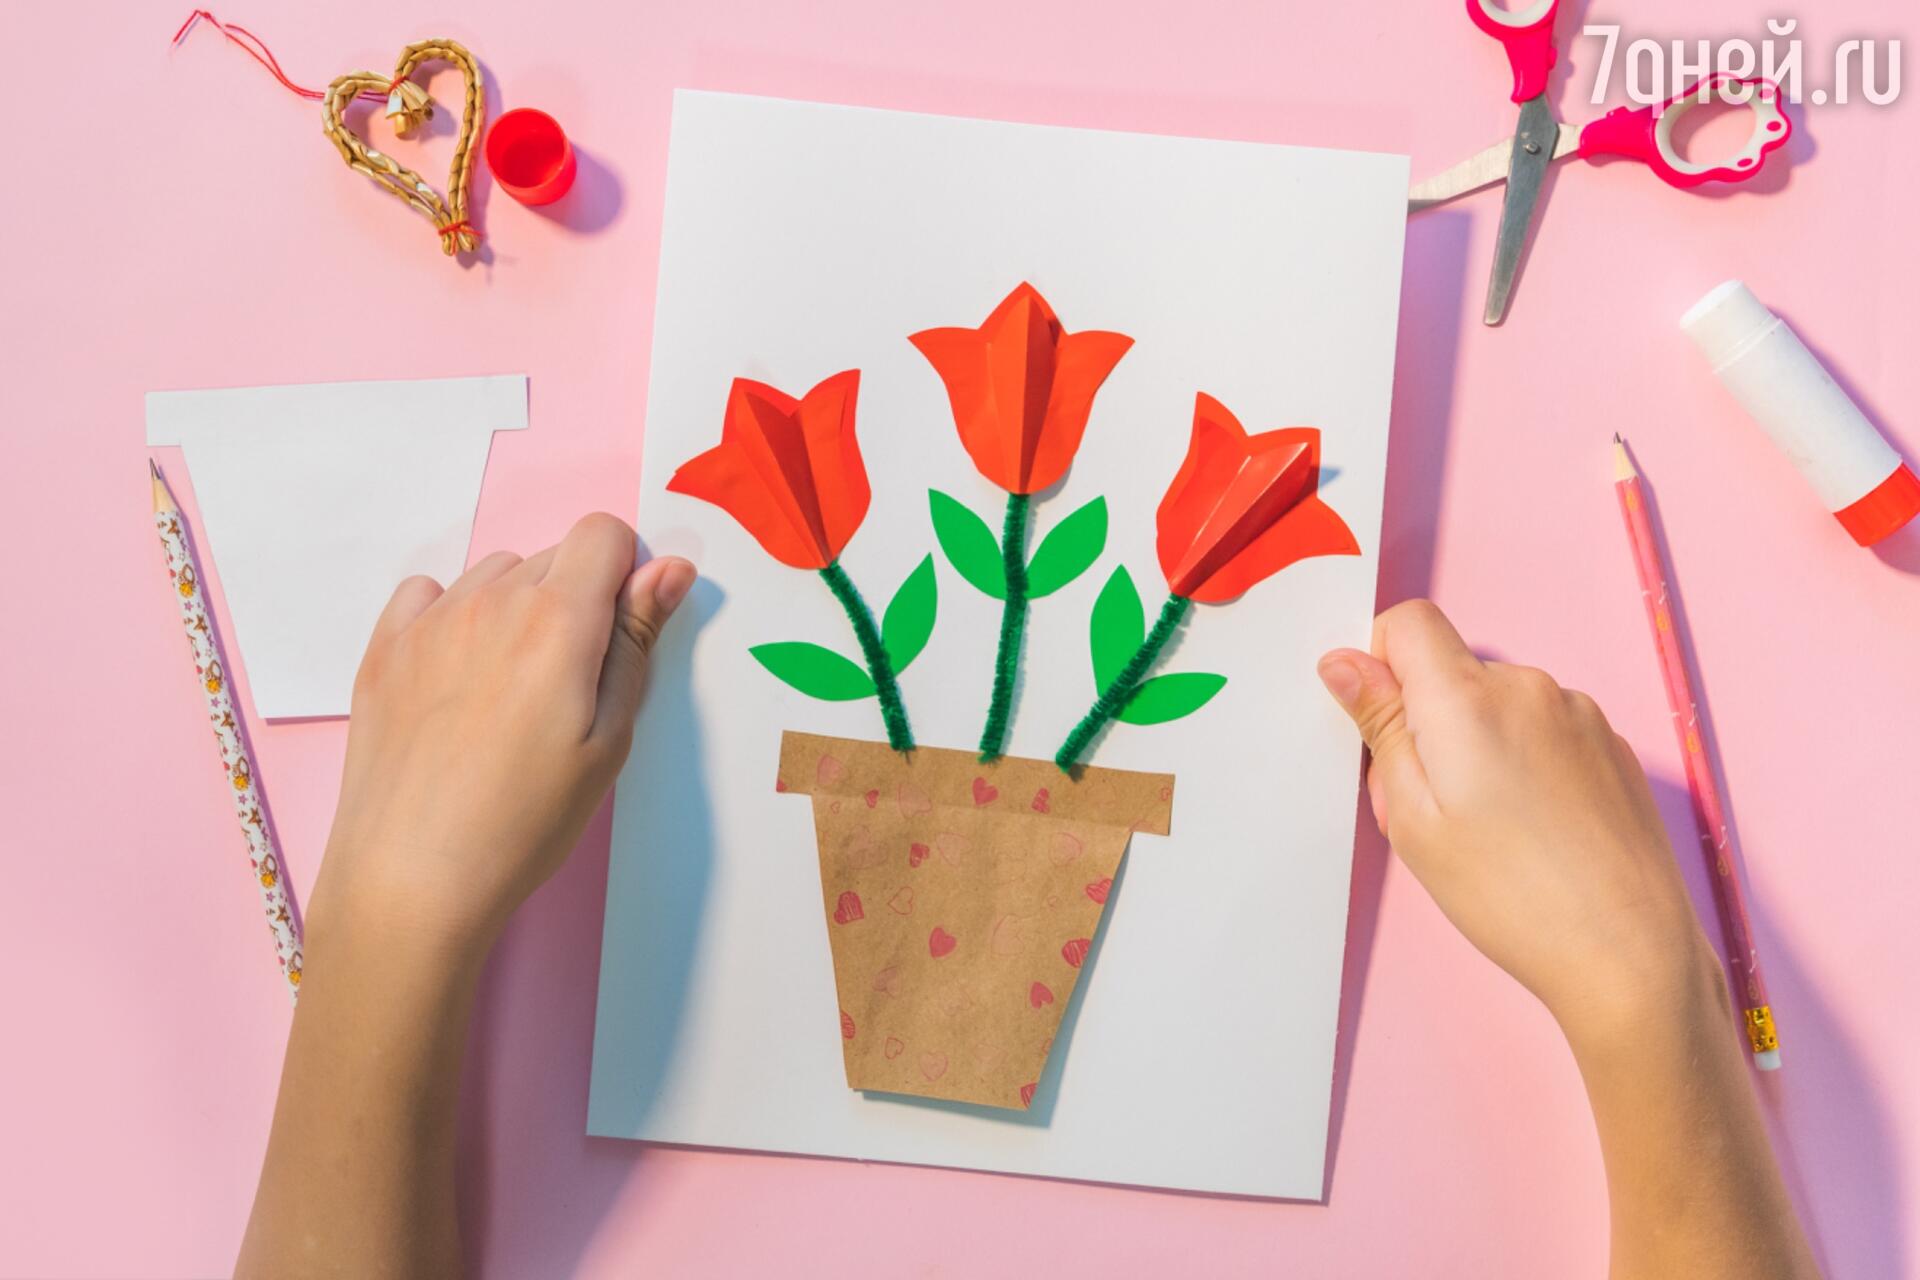 Как сделать цветы из бумаги без клея. Бумажные цветы своими руками. Оригами подарок маме на 8 марта